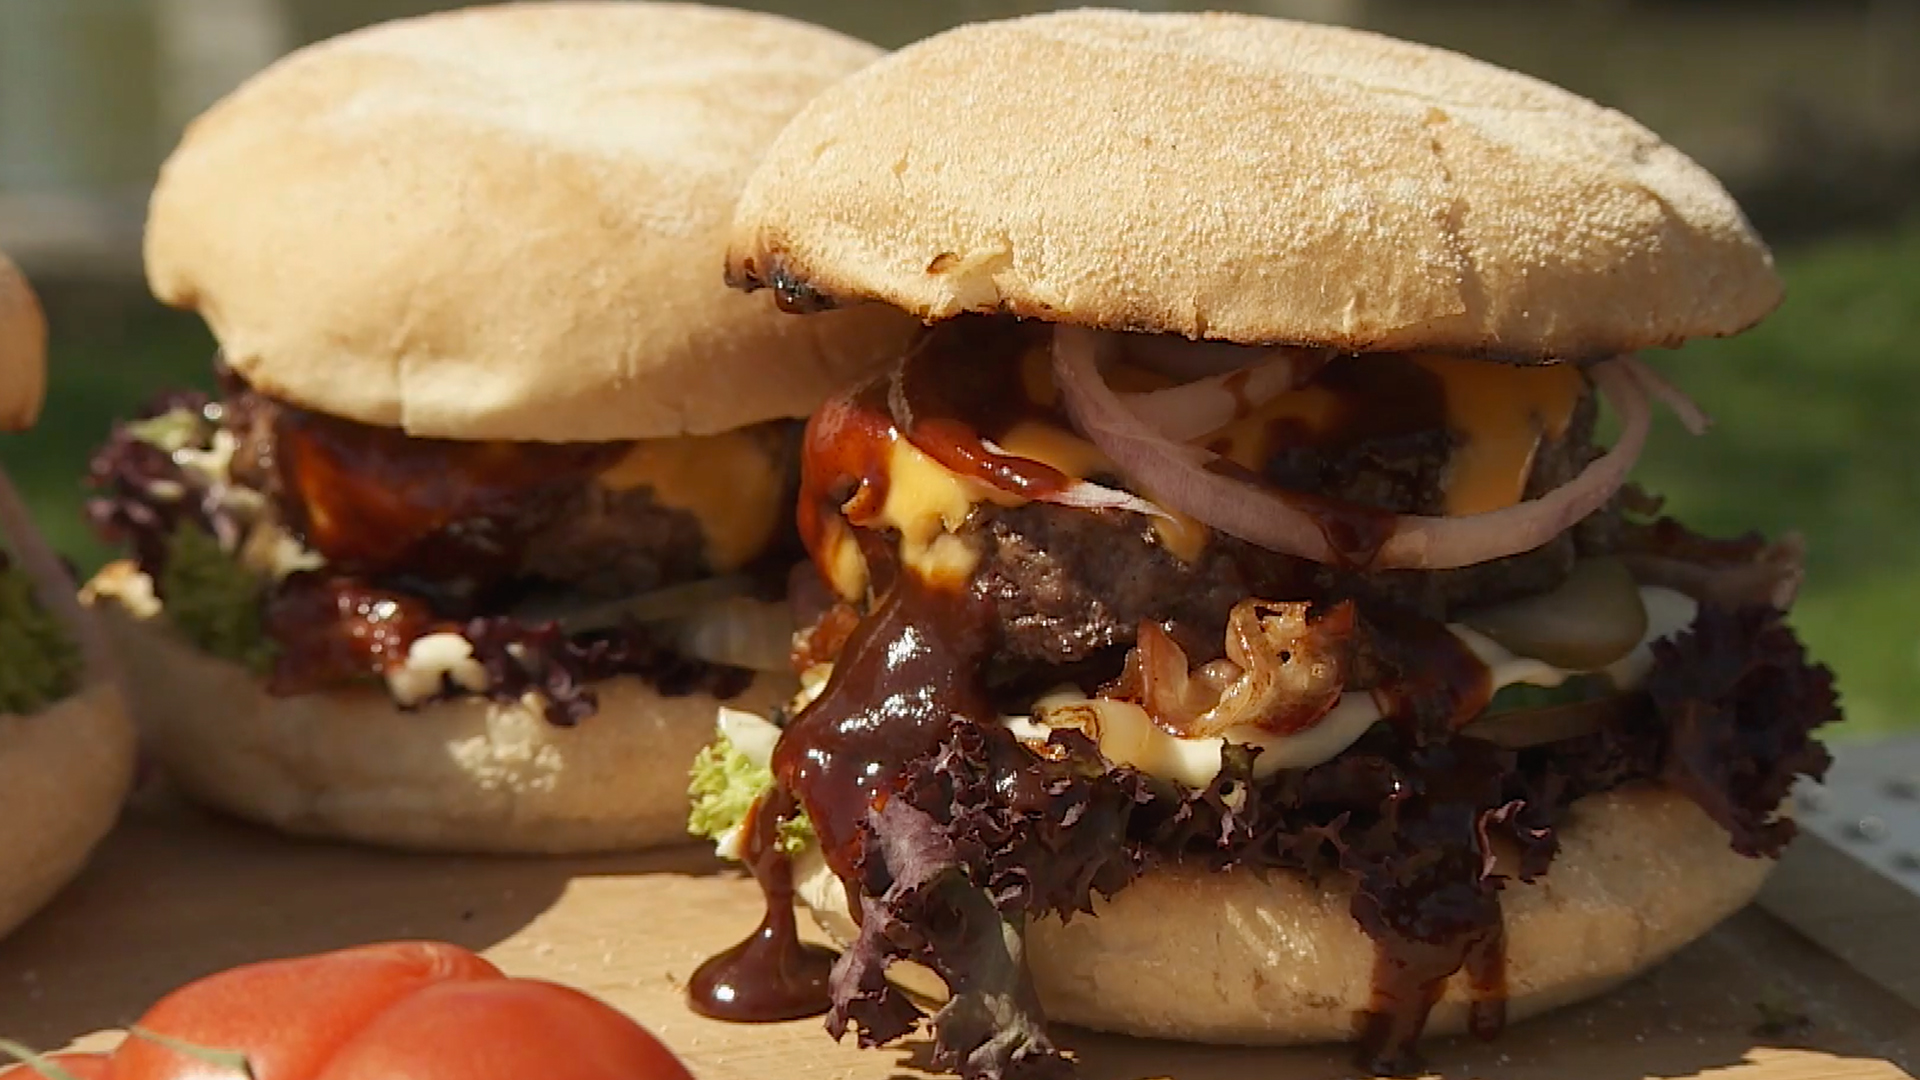 In campagne Extra Hoe maak je de perfecte hamburger op de BBQ? - IK BBQ voor jou |  televisieprogramma